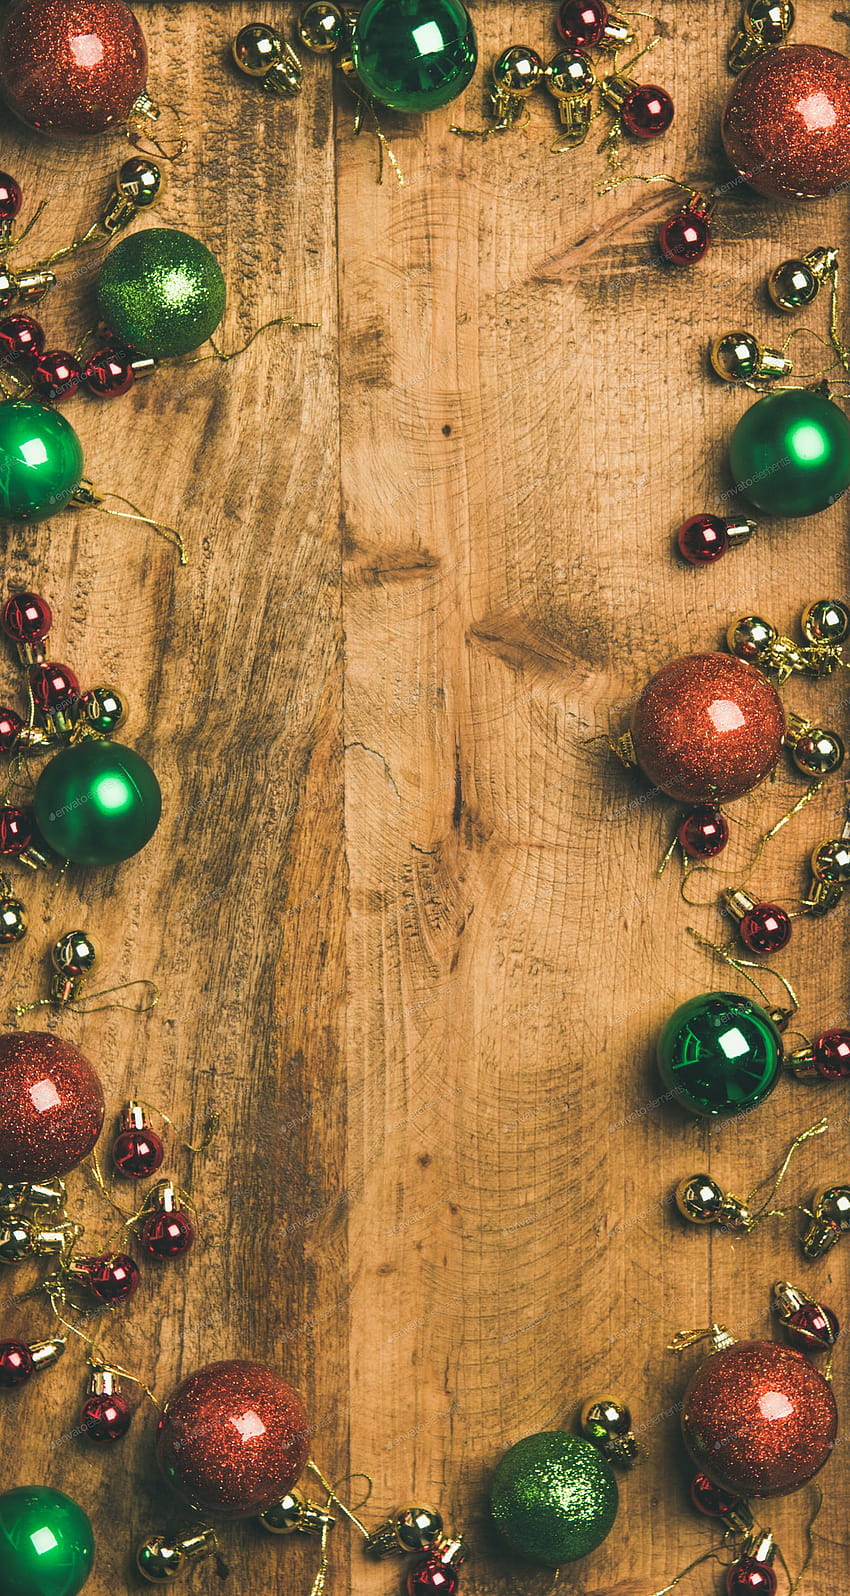 Bola dekorasi pohon Natal dengan latar belakang kayu, komposisi vertikal oleh sonyakamoz di Envato Elements, kayu pedesaan natal wallpaper ponsel HD